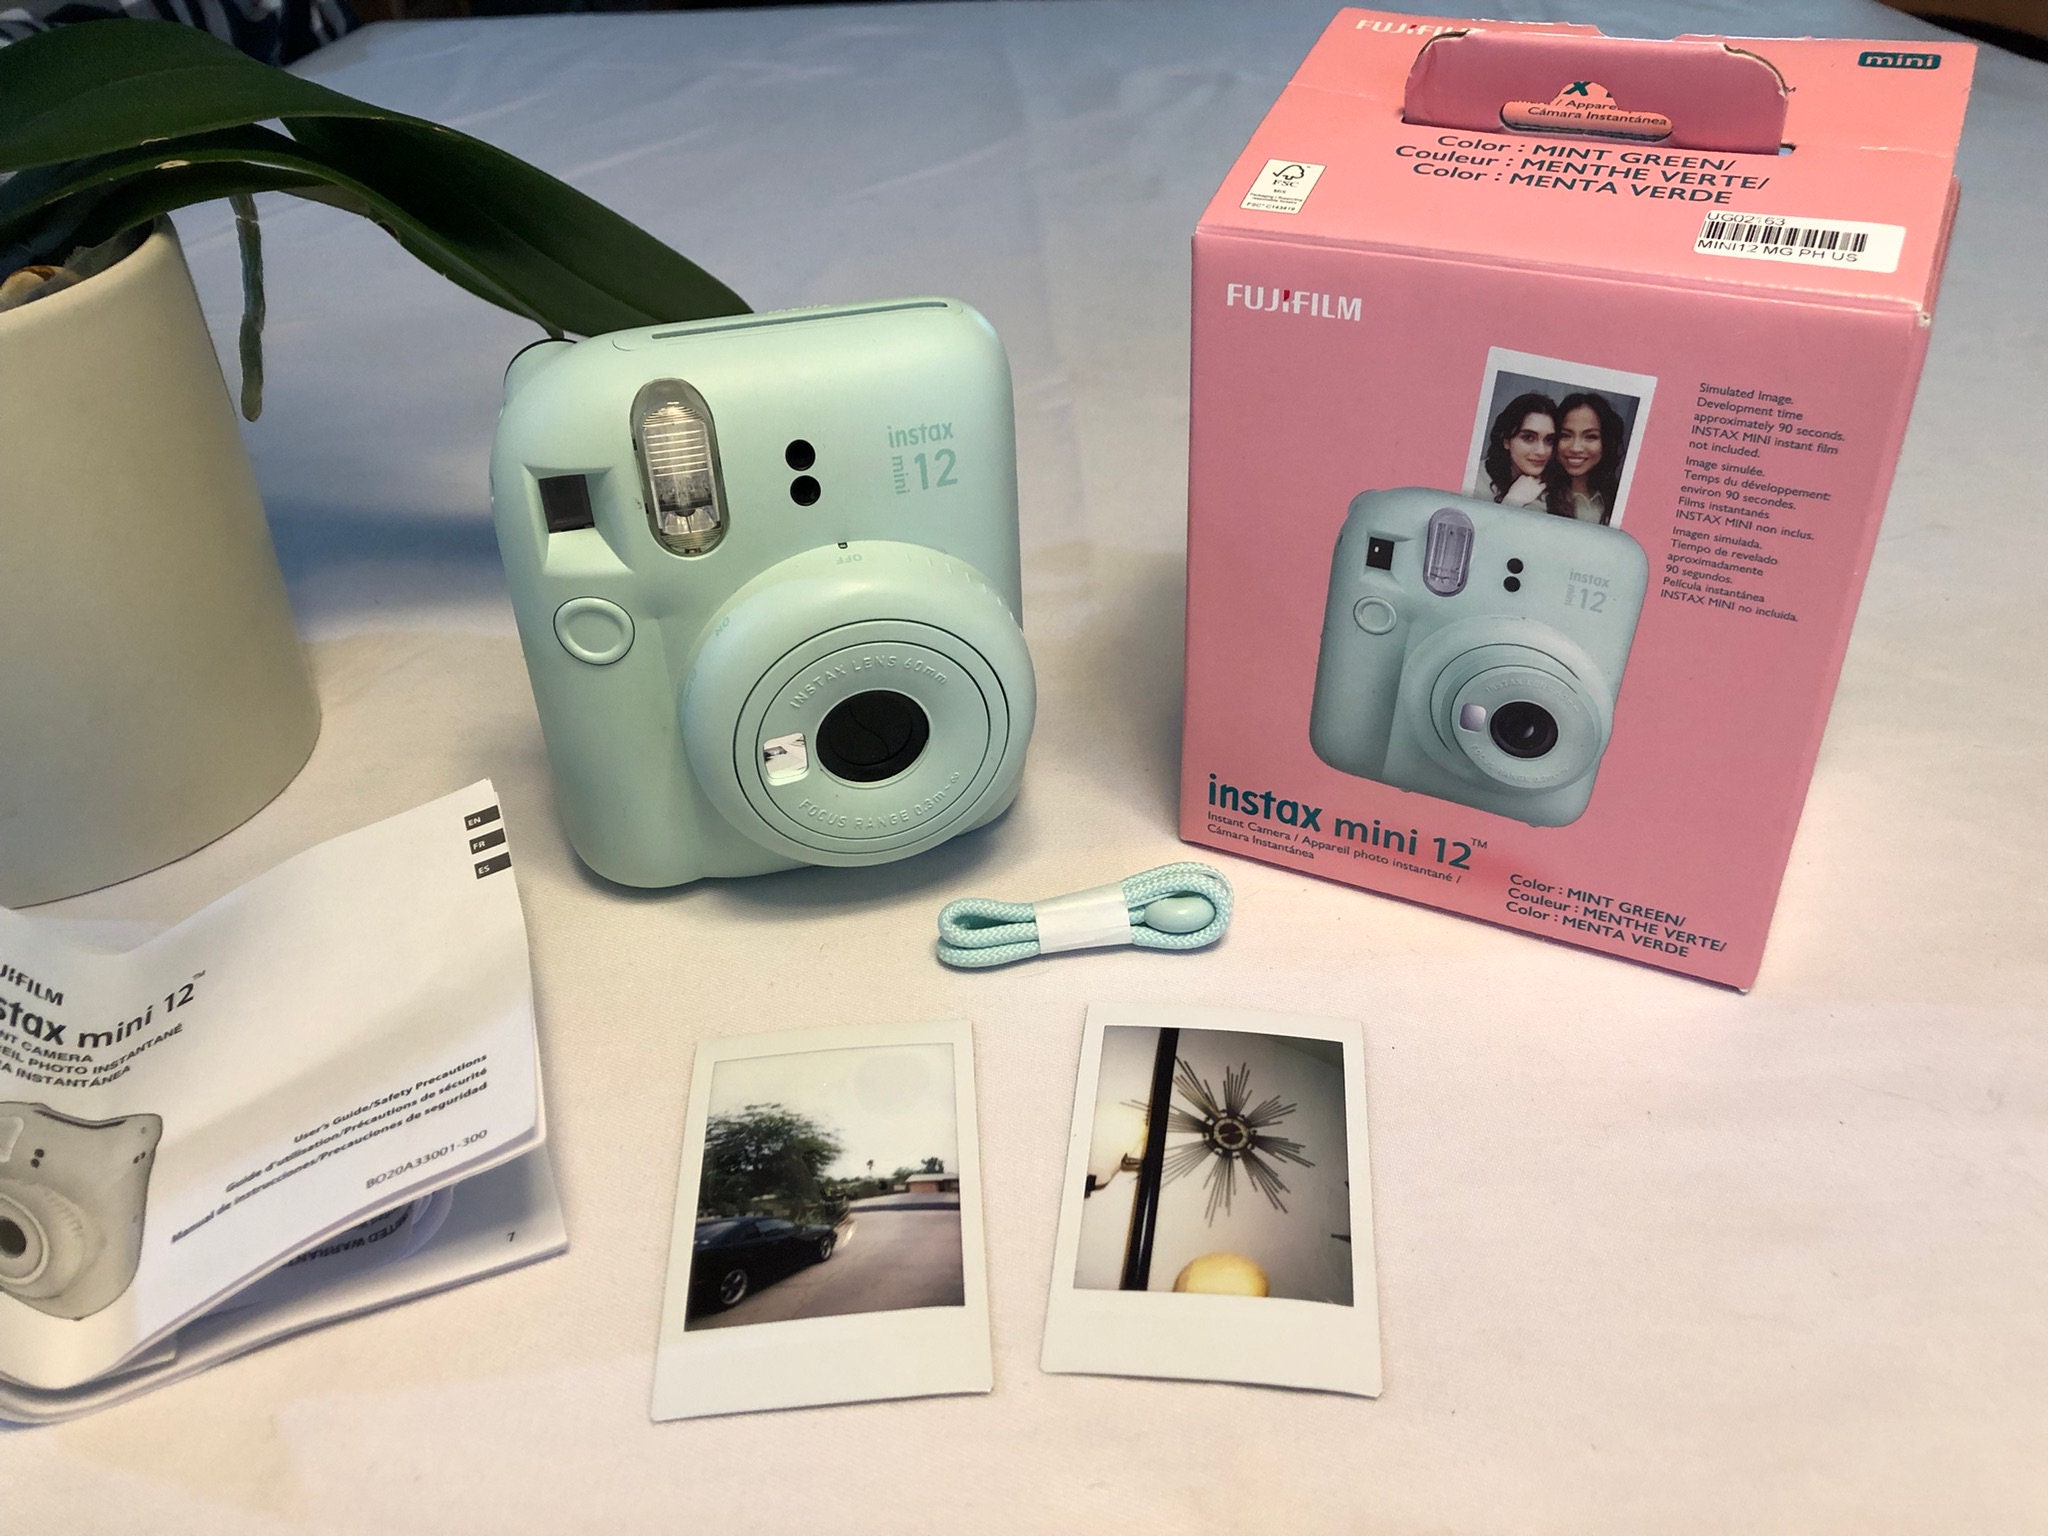 Fujifilm Instax Mini 12 Camera - Mint Green